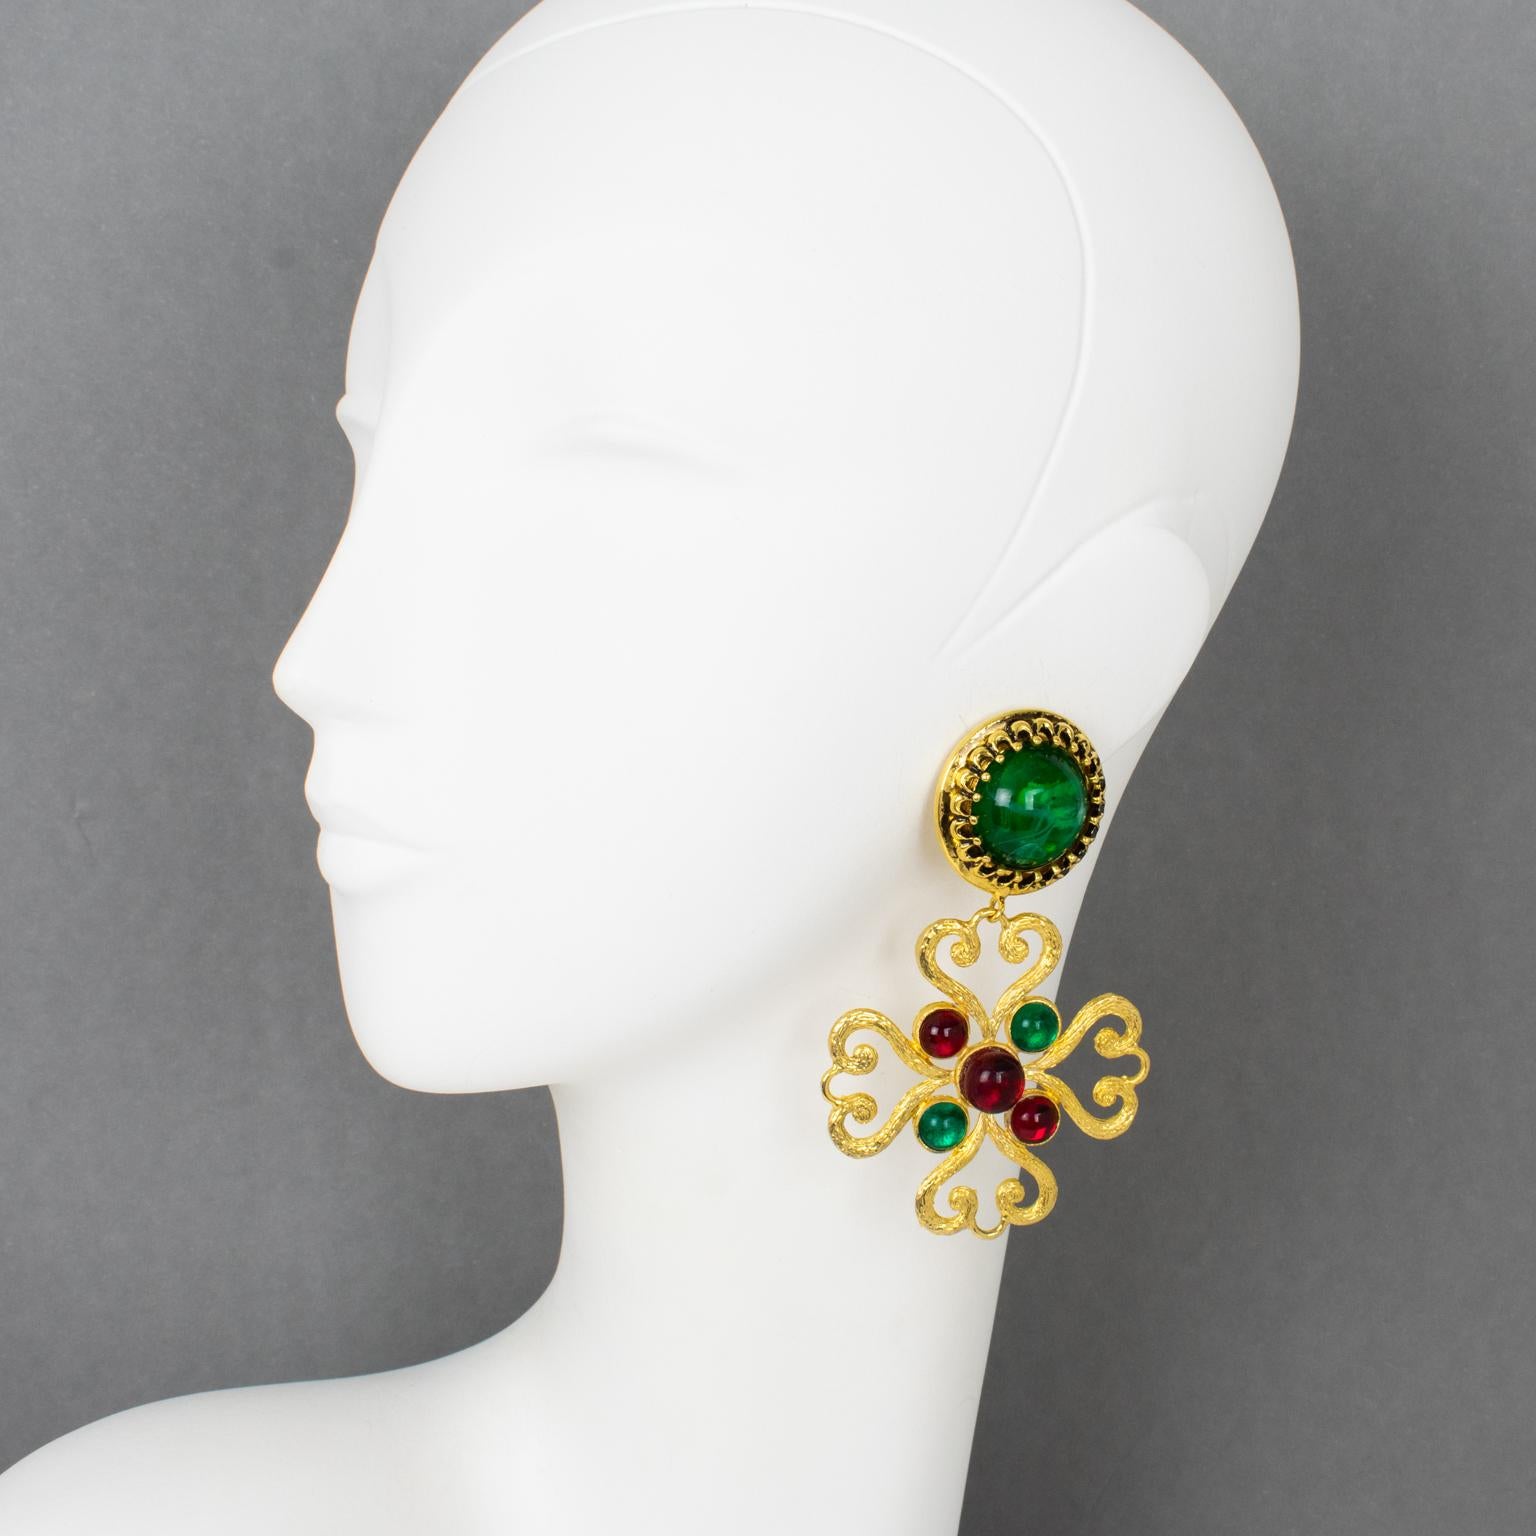 Moschino, Italien, entwarf diese exquisiten baumelnden Ohrringe zum Anstecken. Die Stücke weisen ein übergroßes stilisiertes Malteserkreuz-Design in vergoldetem Metallrahmen auf, das mit Harzcabochons in rubinroten und smaragdgrünen Marmorfarben